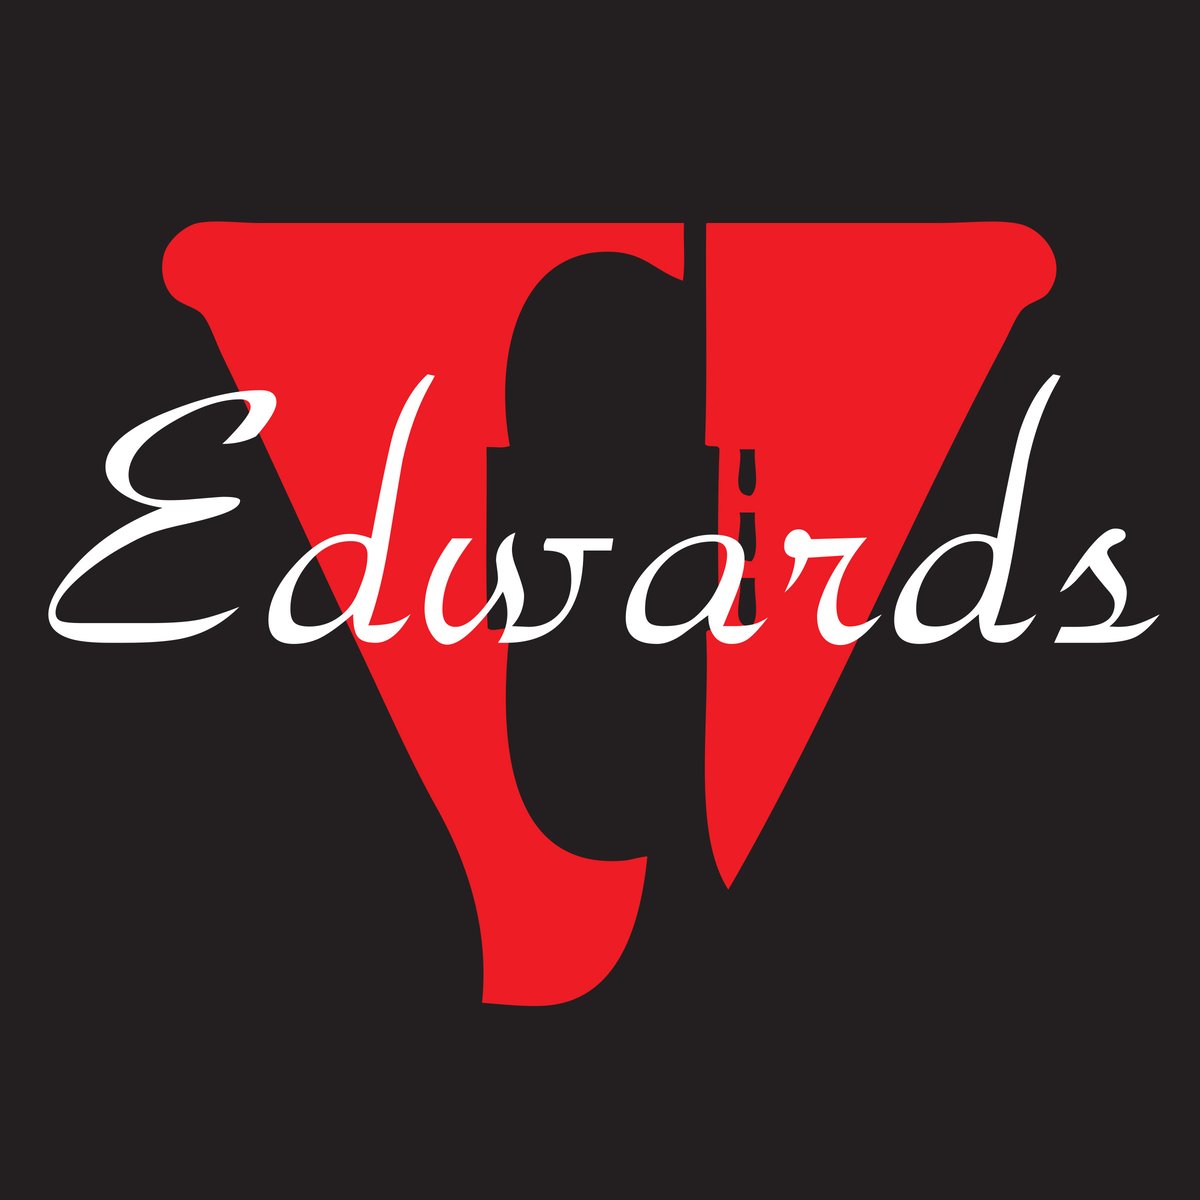 Edwards Store